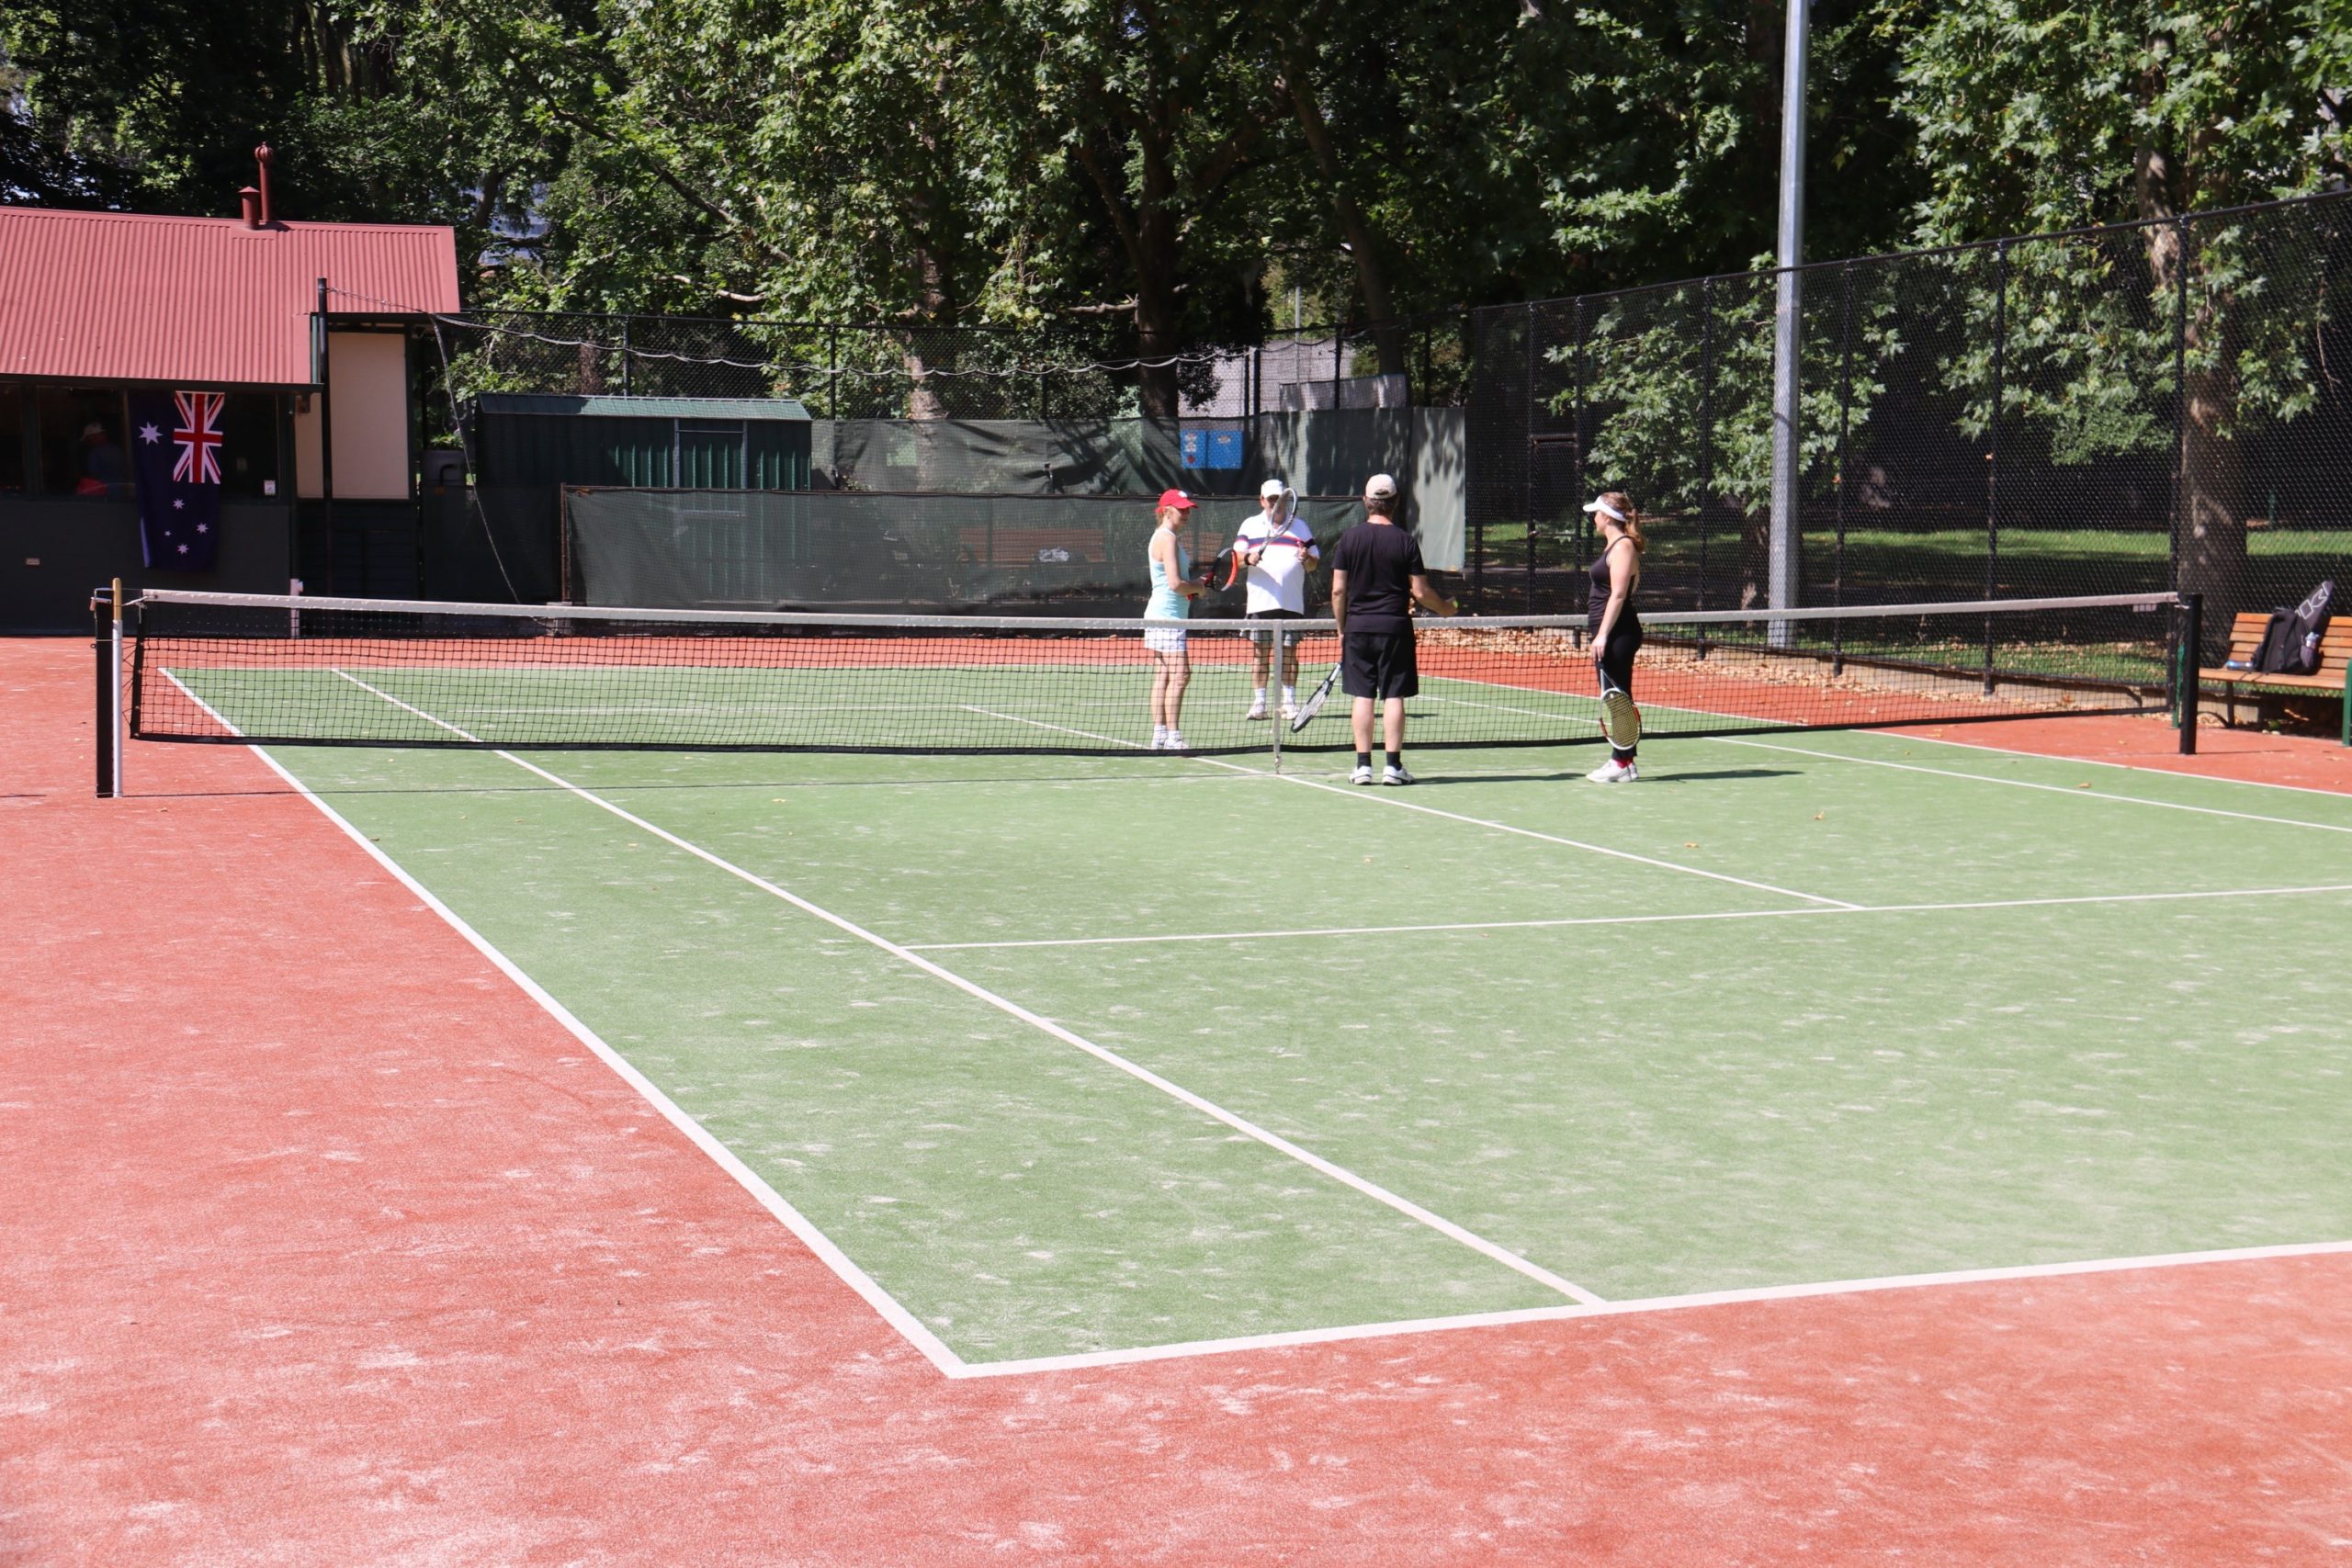 tennis-tourist-carlton-gardens-tennis-club-teams-melbourne-australia-teri-church